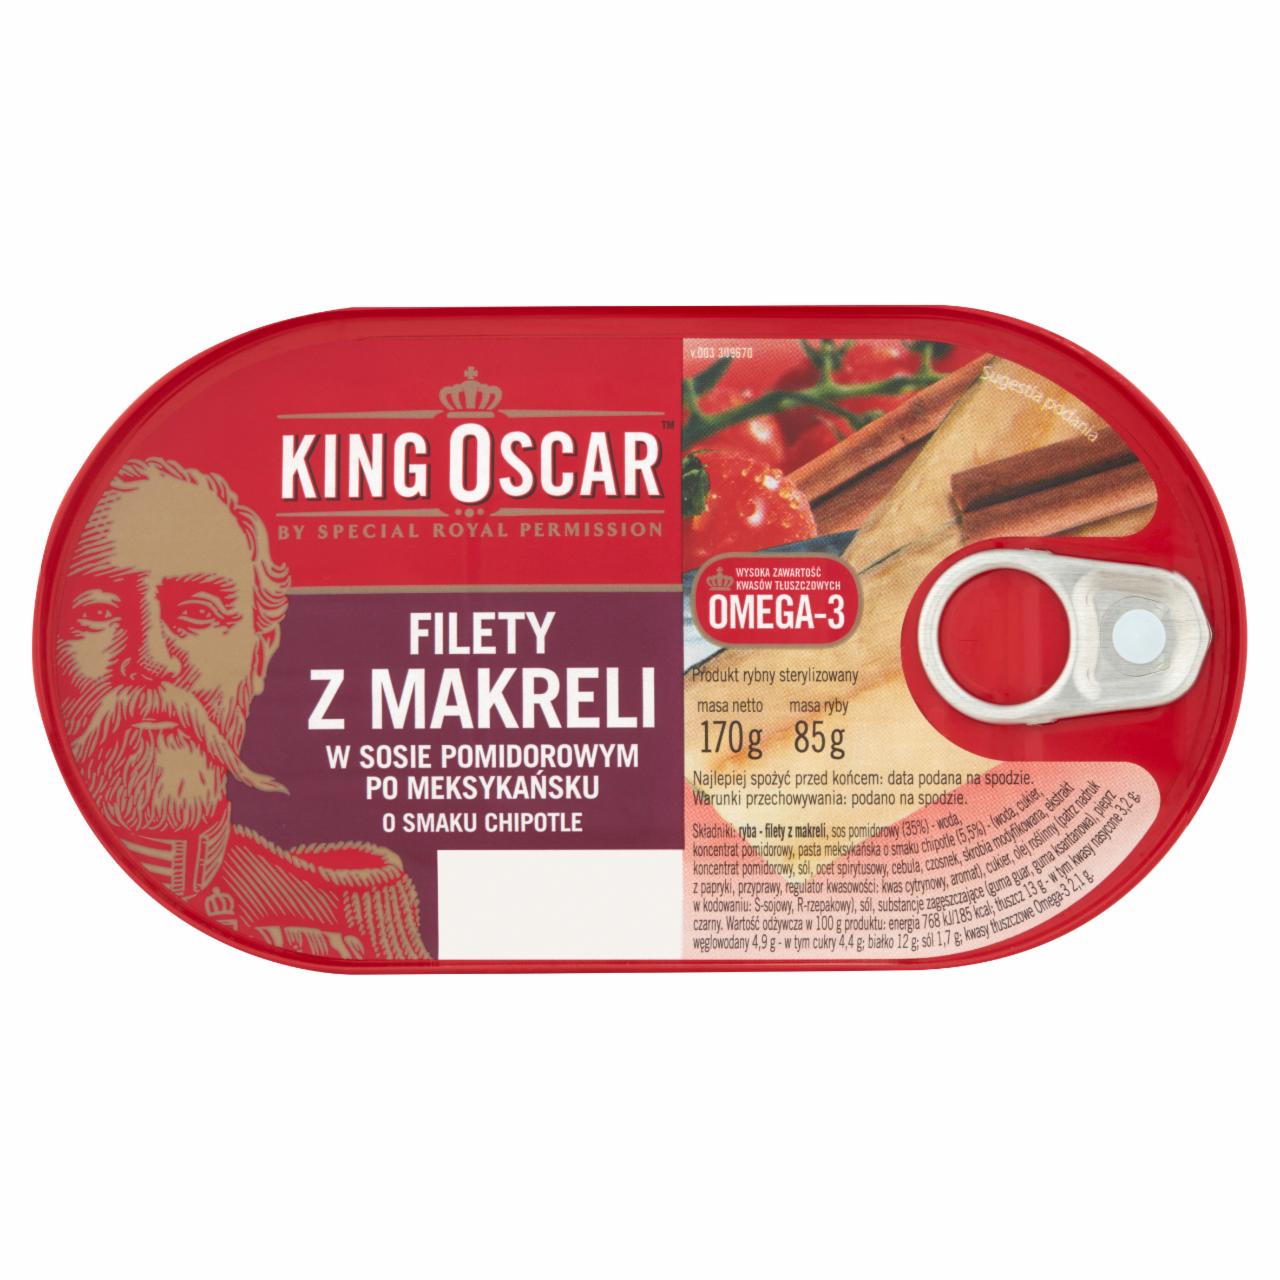 Zdjęcia - King Oscar Filety z makreli w sosie pomidorowym po meksykańsku o smaku chipotle 170 g